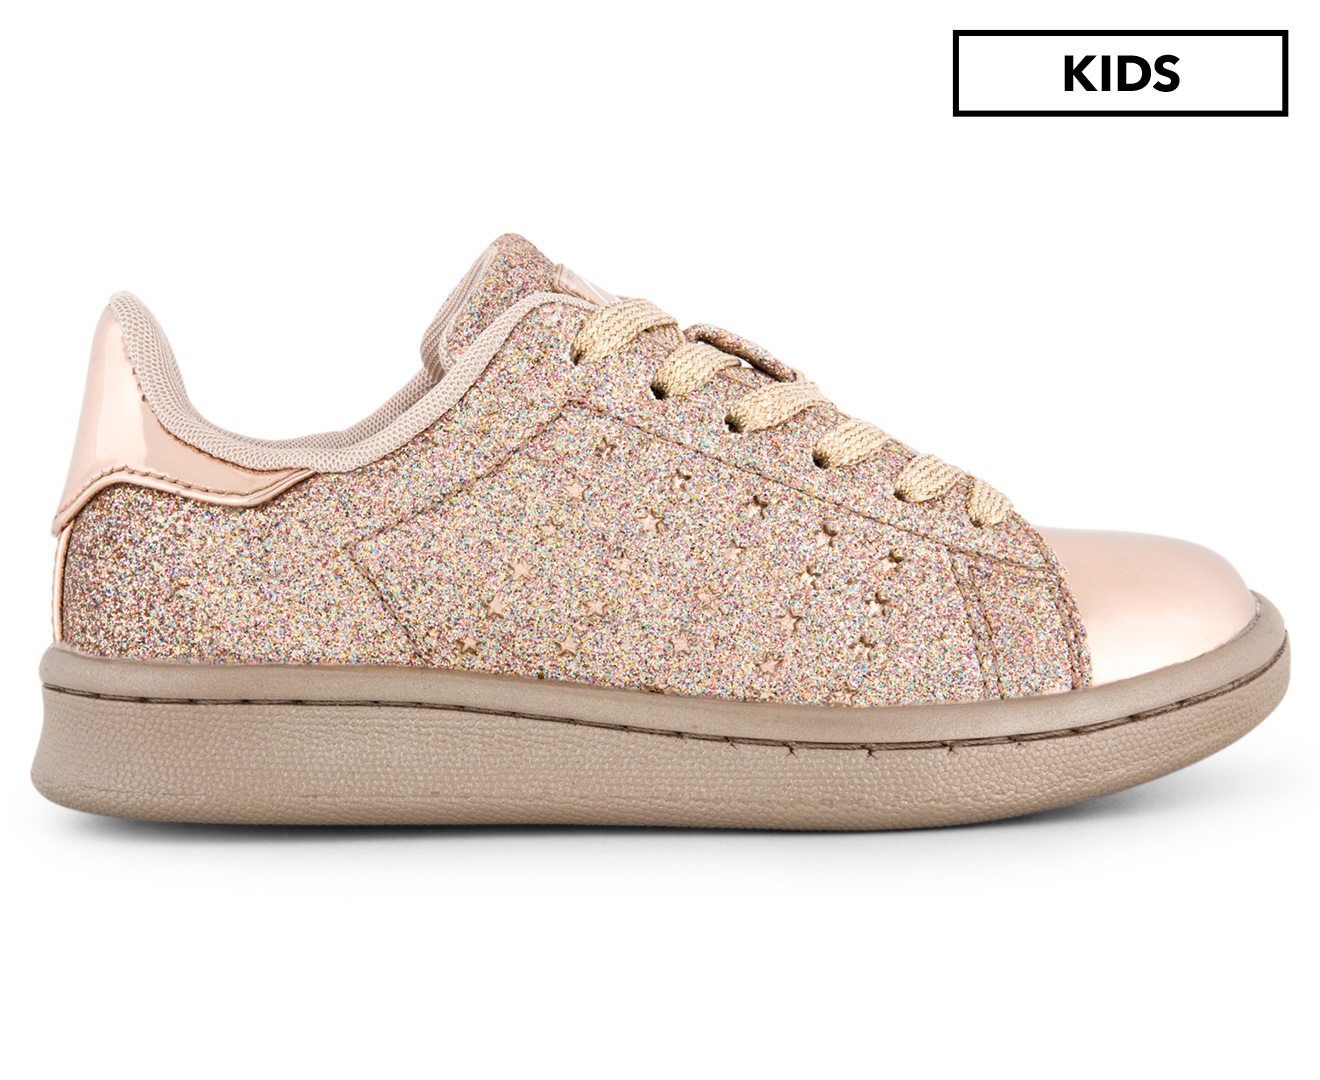 Clarks Disco Shoe - Rose Gold Glitter | Catch.com.au